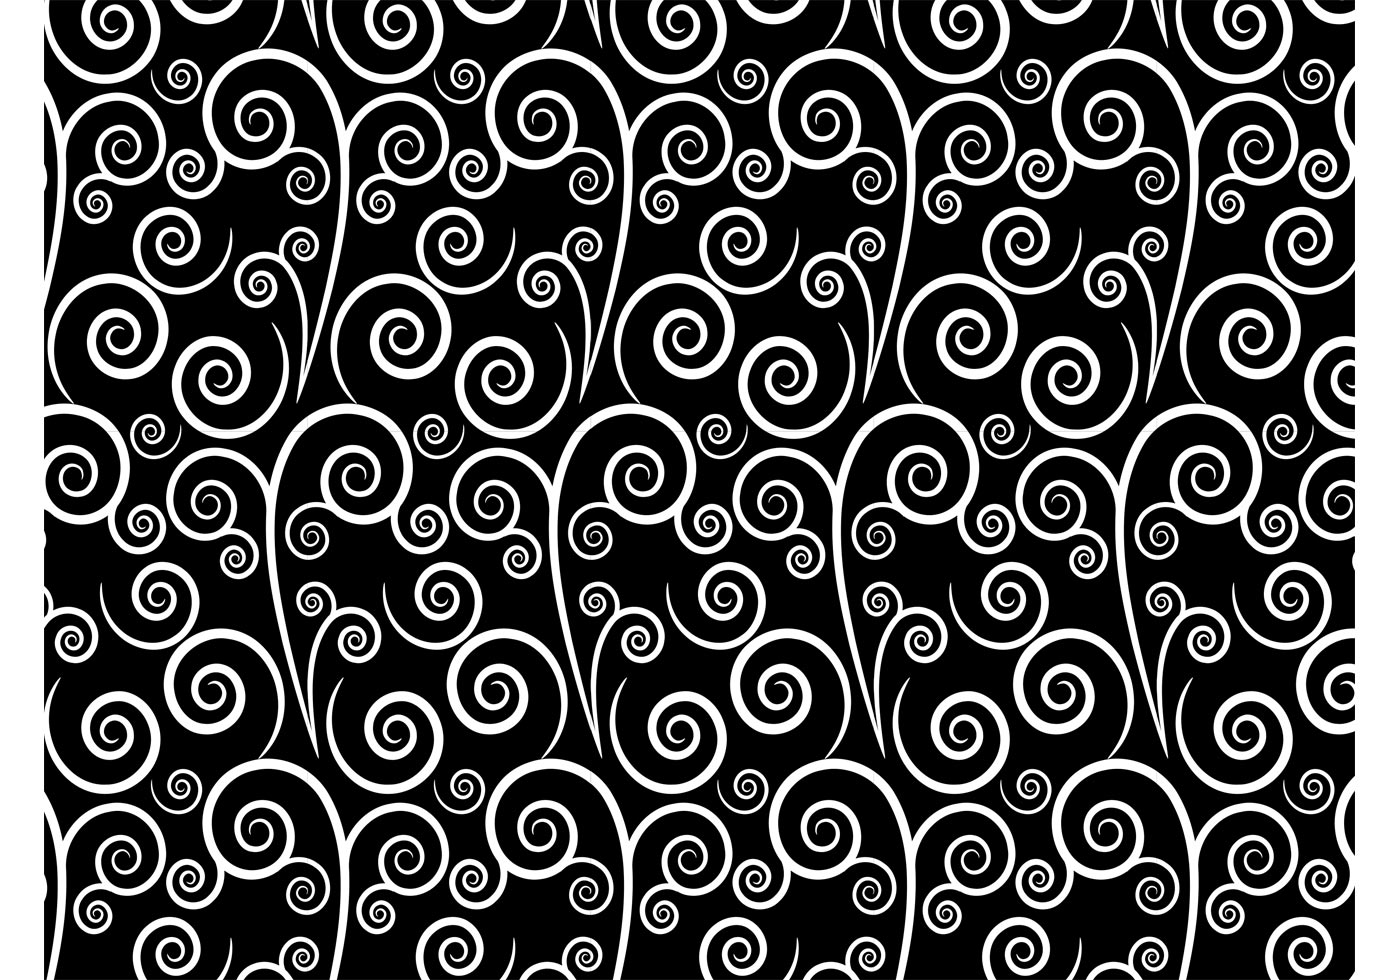 White Swirls Vector Pattern - Download Free Vector Art ...
 Vintage Swirl Patterns